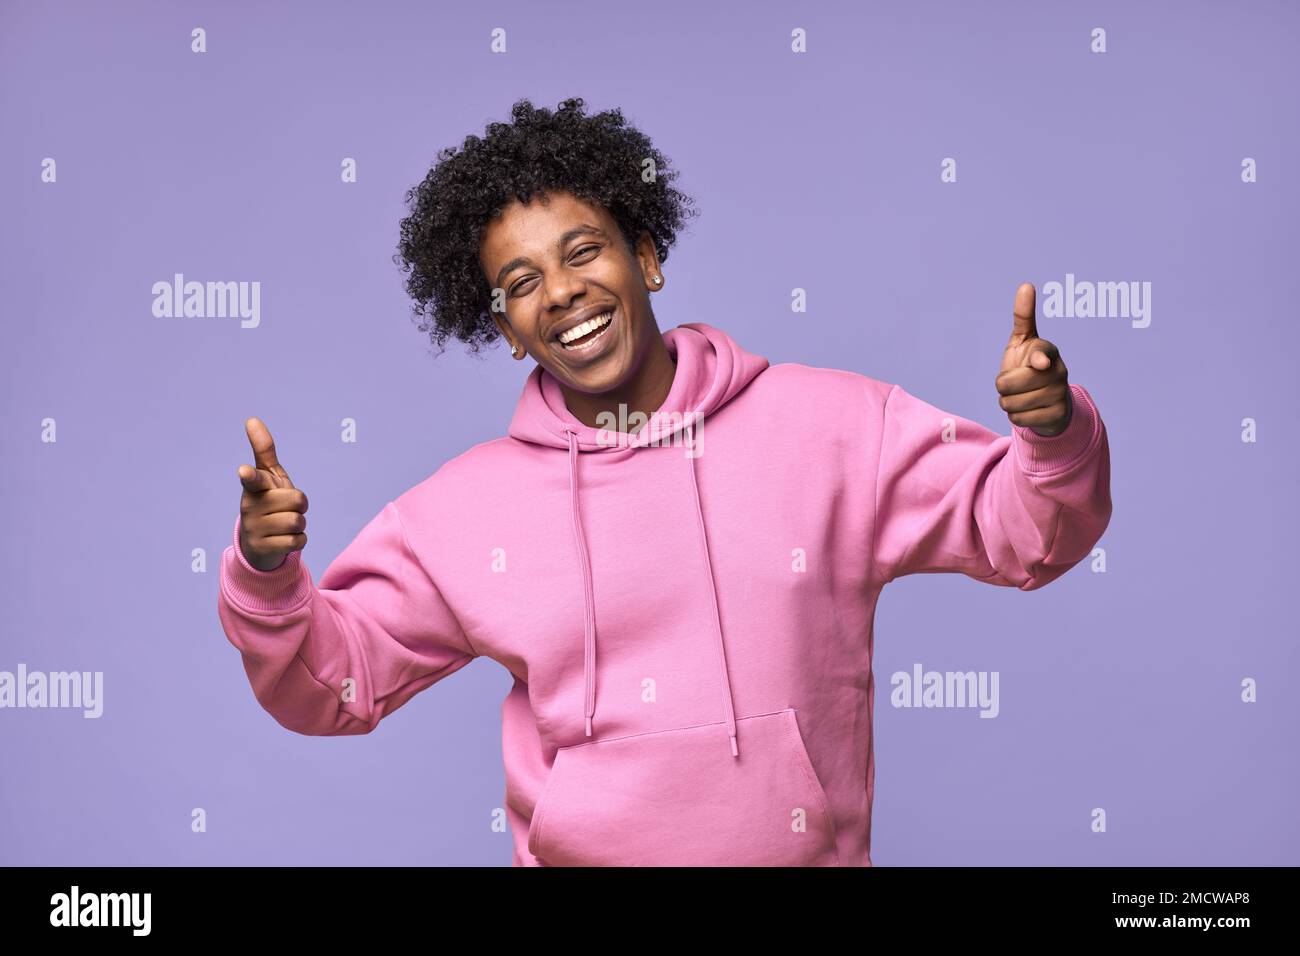 Ragazzo afro-americano felice che indica voi isolato su sfondo viola. Foto Stock